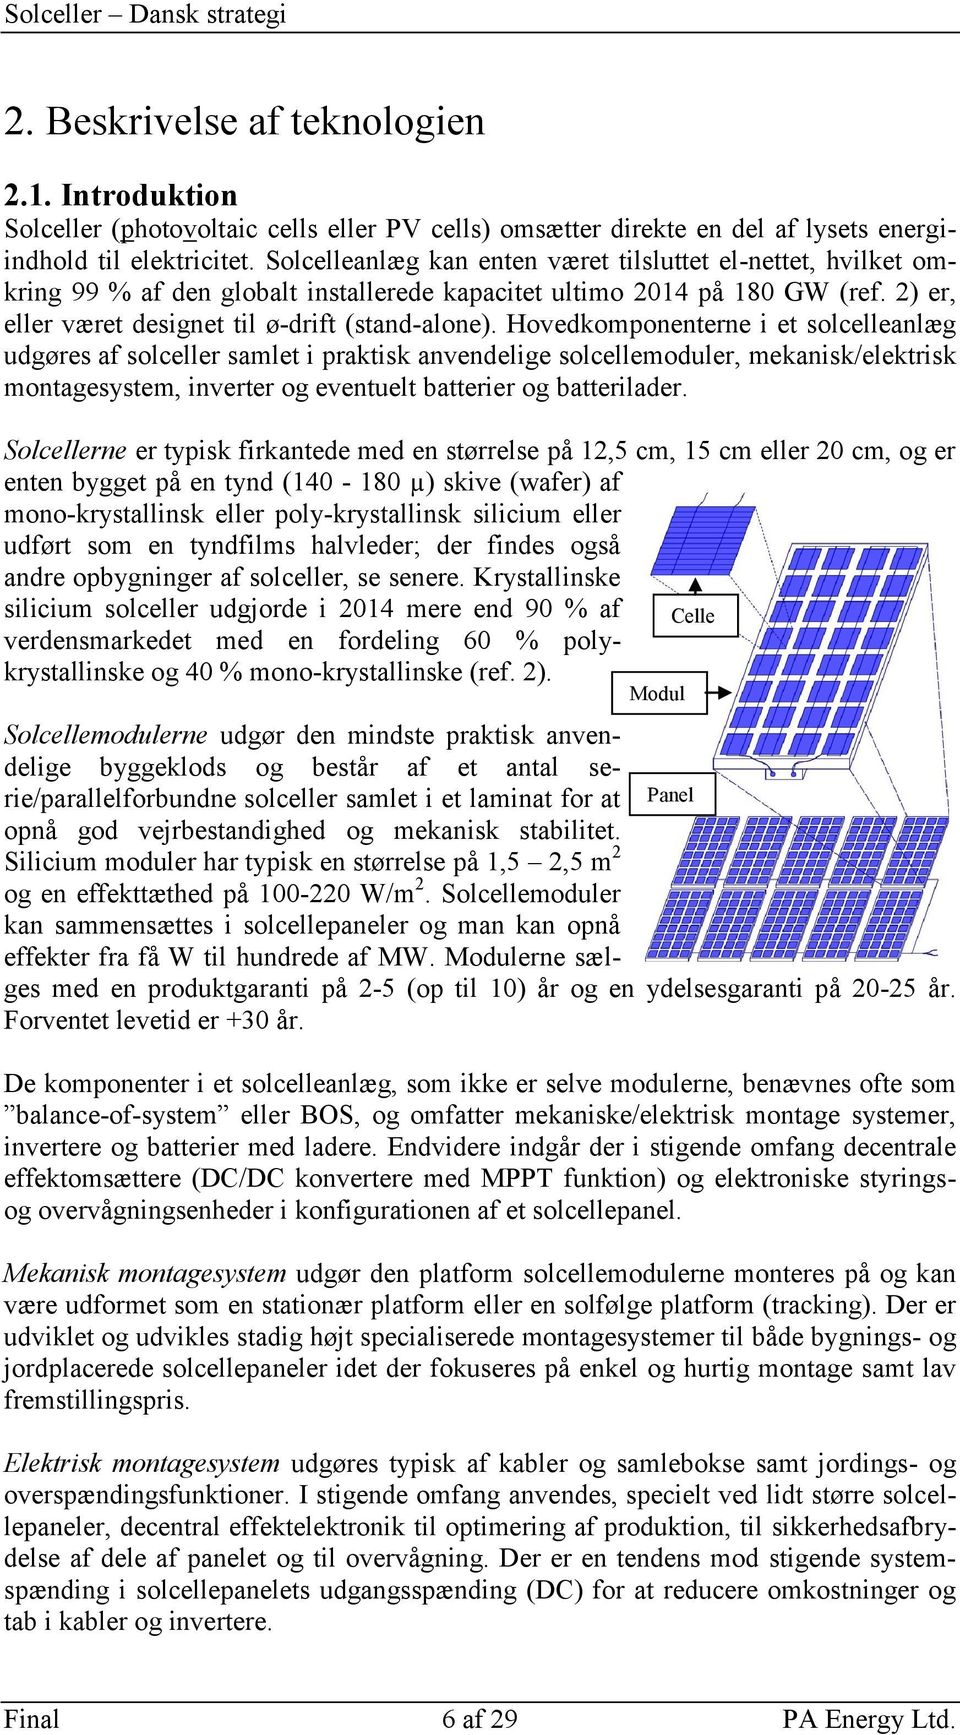 Solceller Dansk strategi for forskning, udvikling, demonstration. - PDF  Free Download